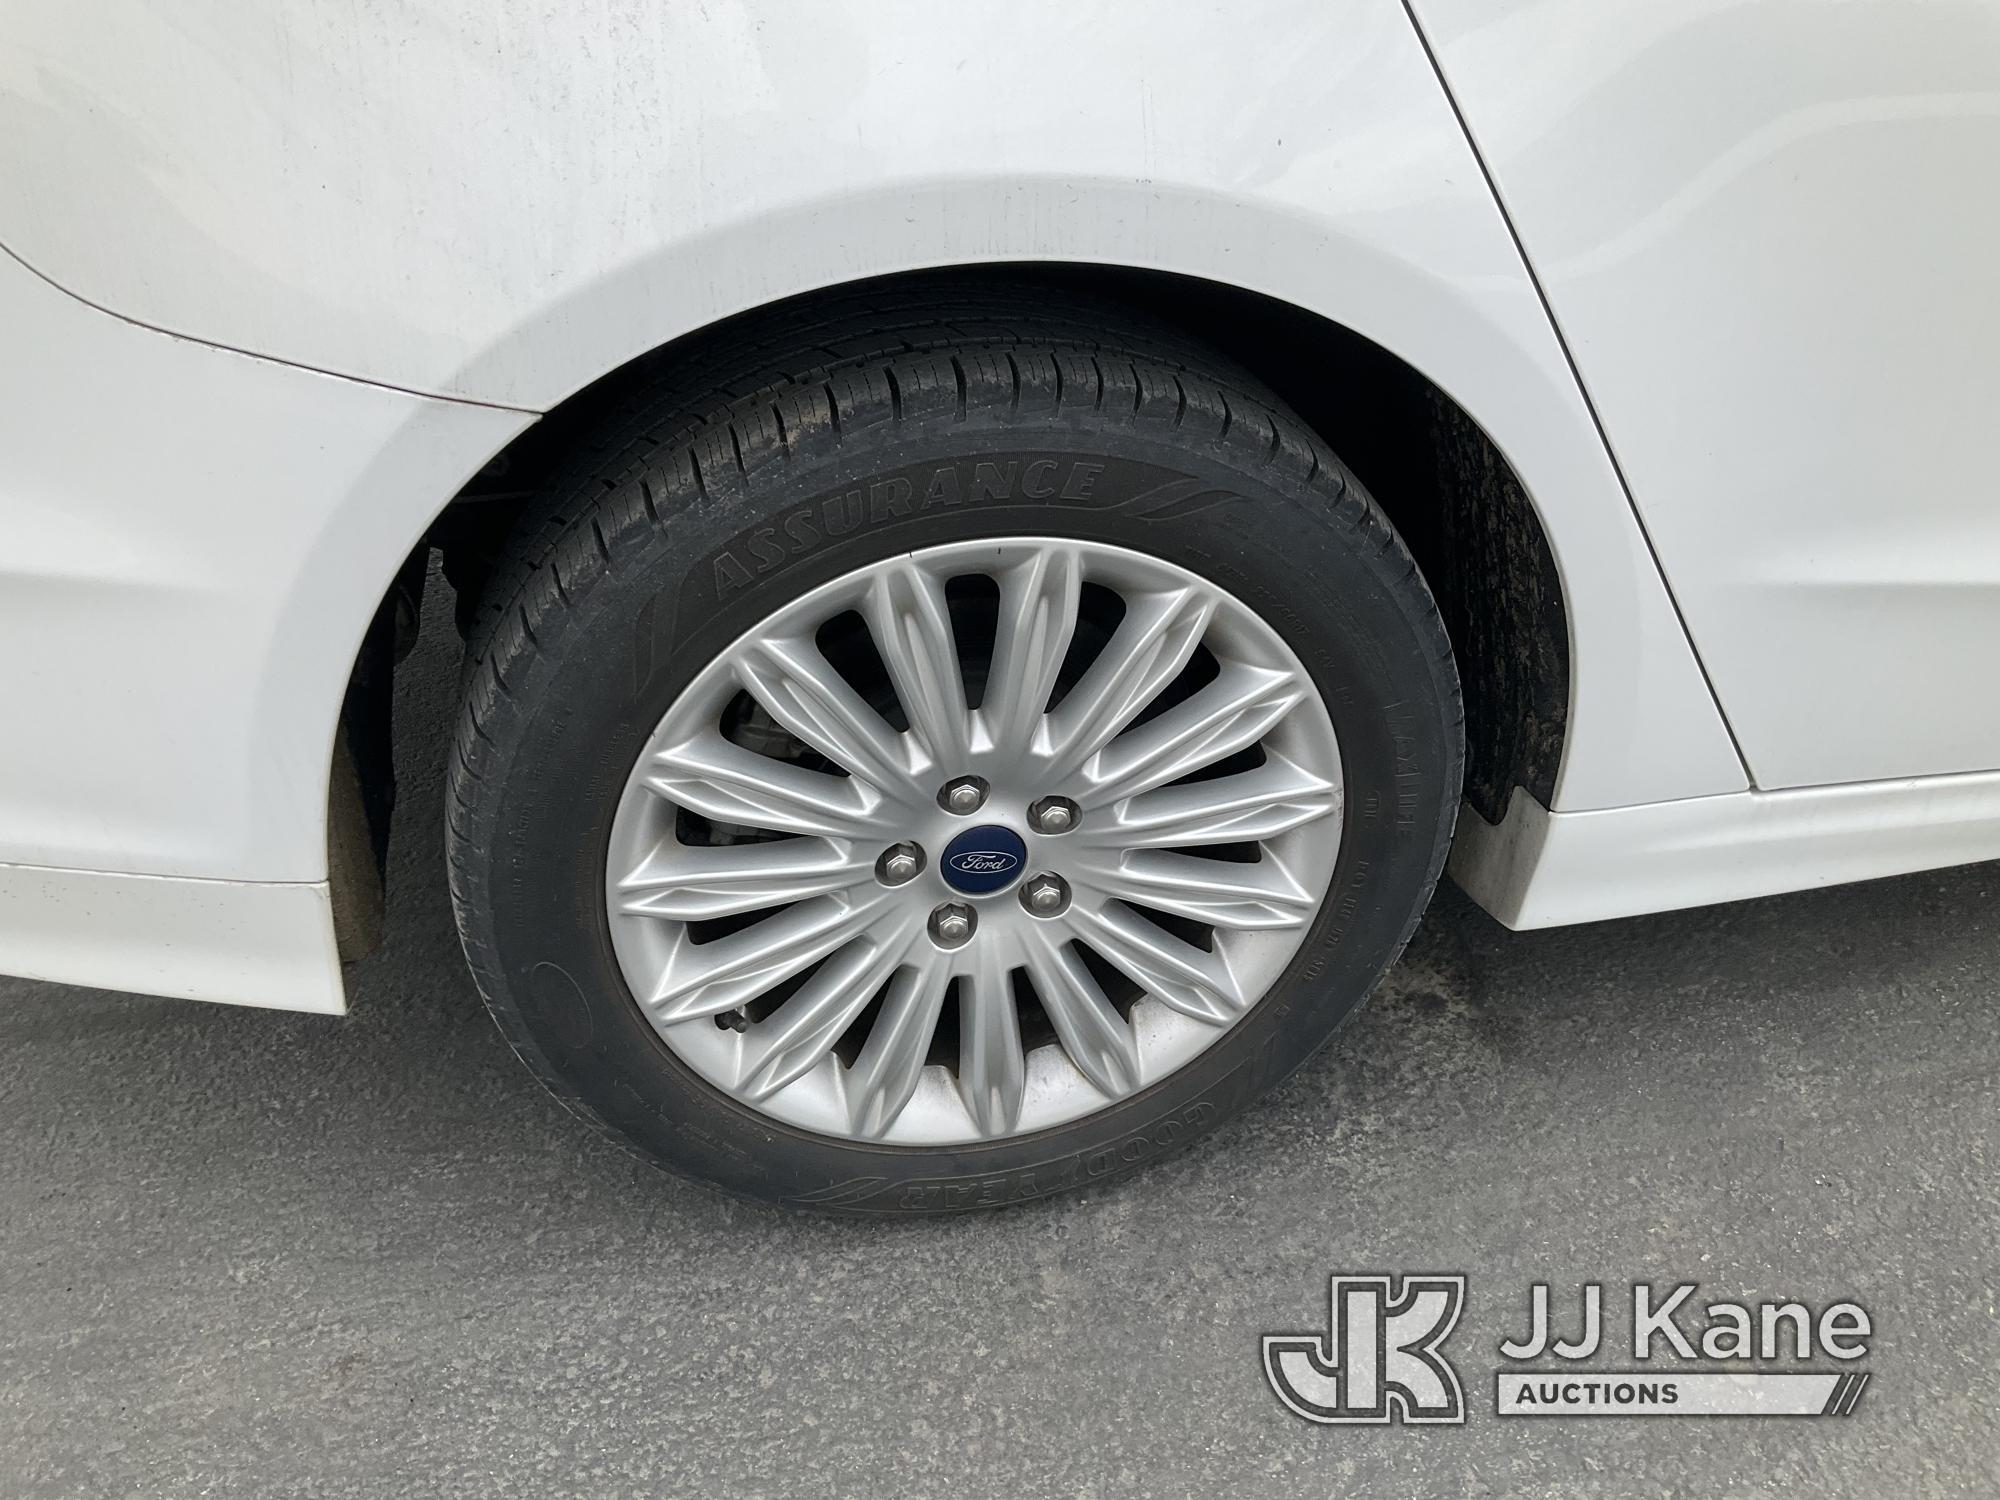 (Jurupa Valley, CA) 2014 Ford Fusion Hybrid 4-Door Sedan Runs & Moves, Missing Passenger Mirror, Ope